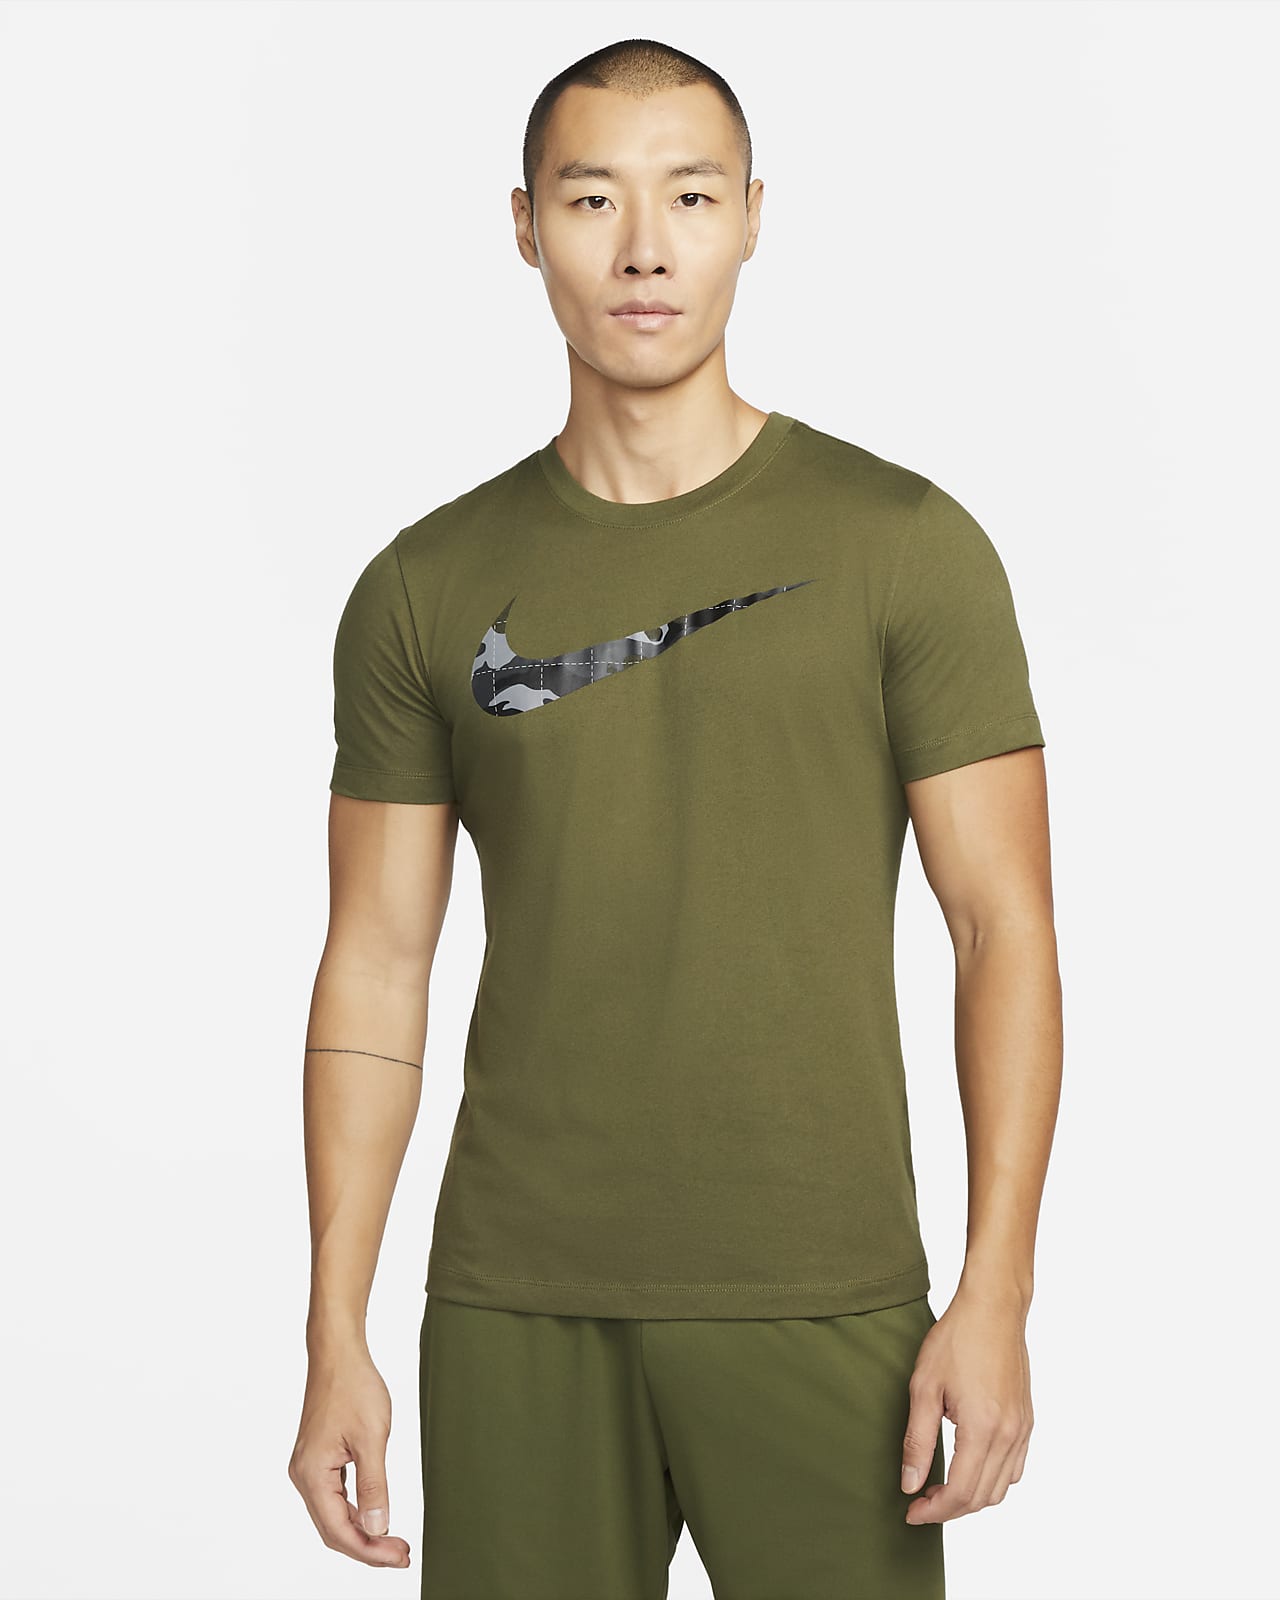 เสื้อยืดเทรนนิ่งผู้ชายมีกราฟิก Nike Dri-FIT